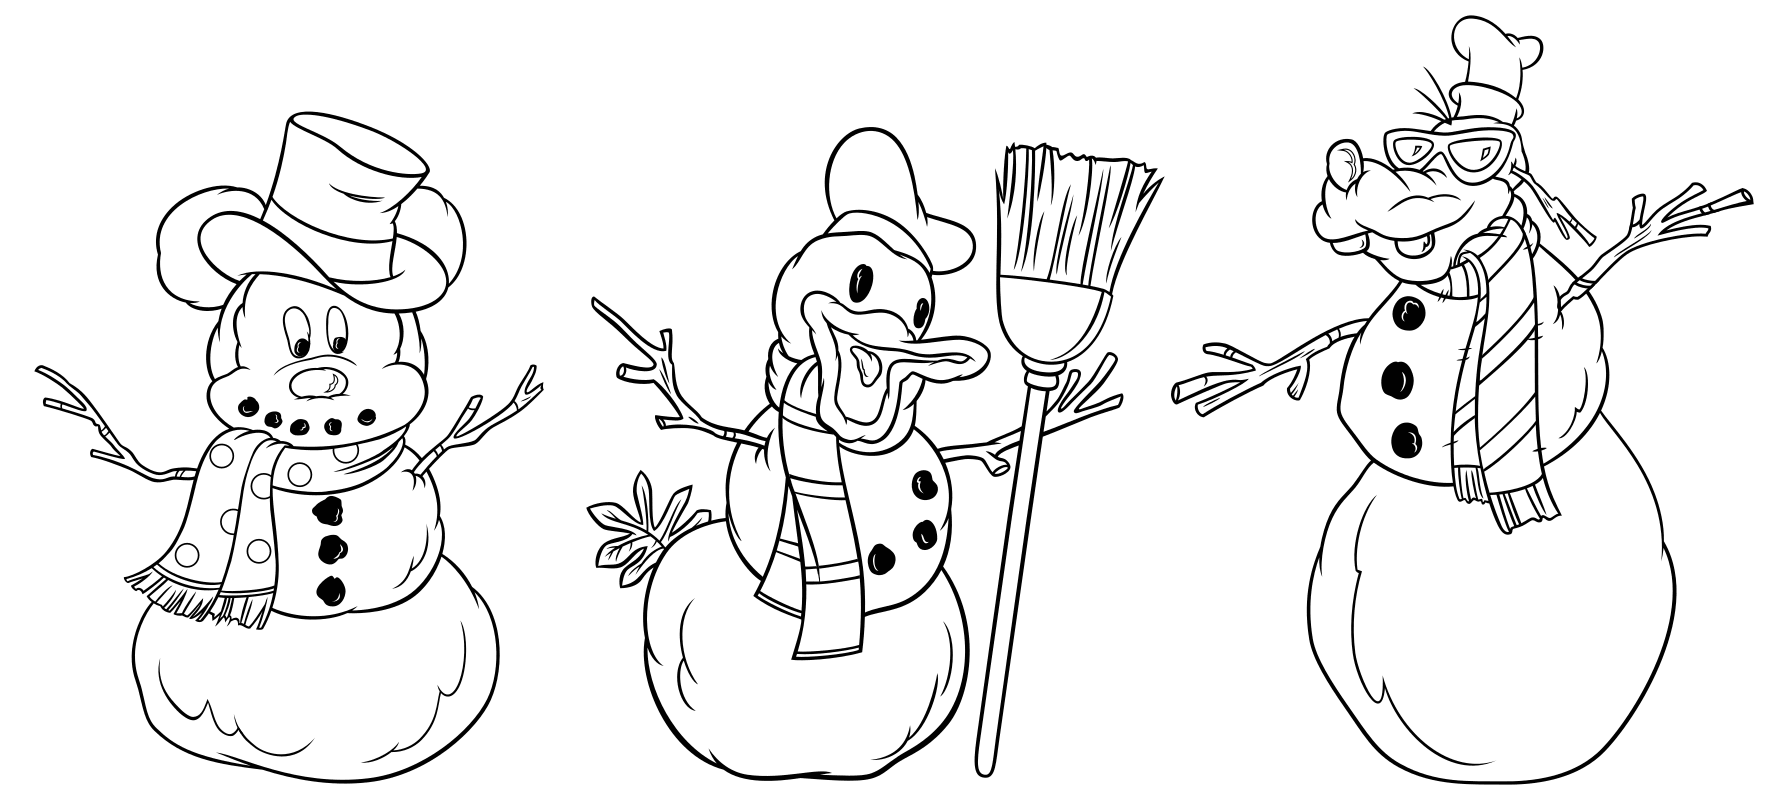 Раскраска - Микки Маус и друзья - Снеговики - Микки, Дональд и Плуто